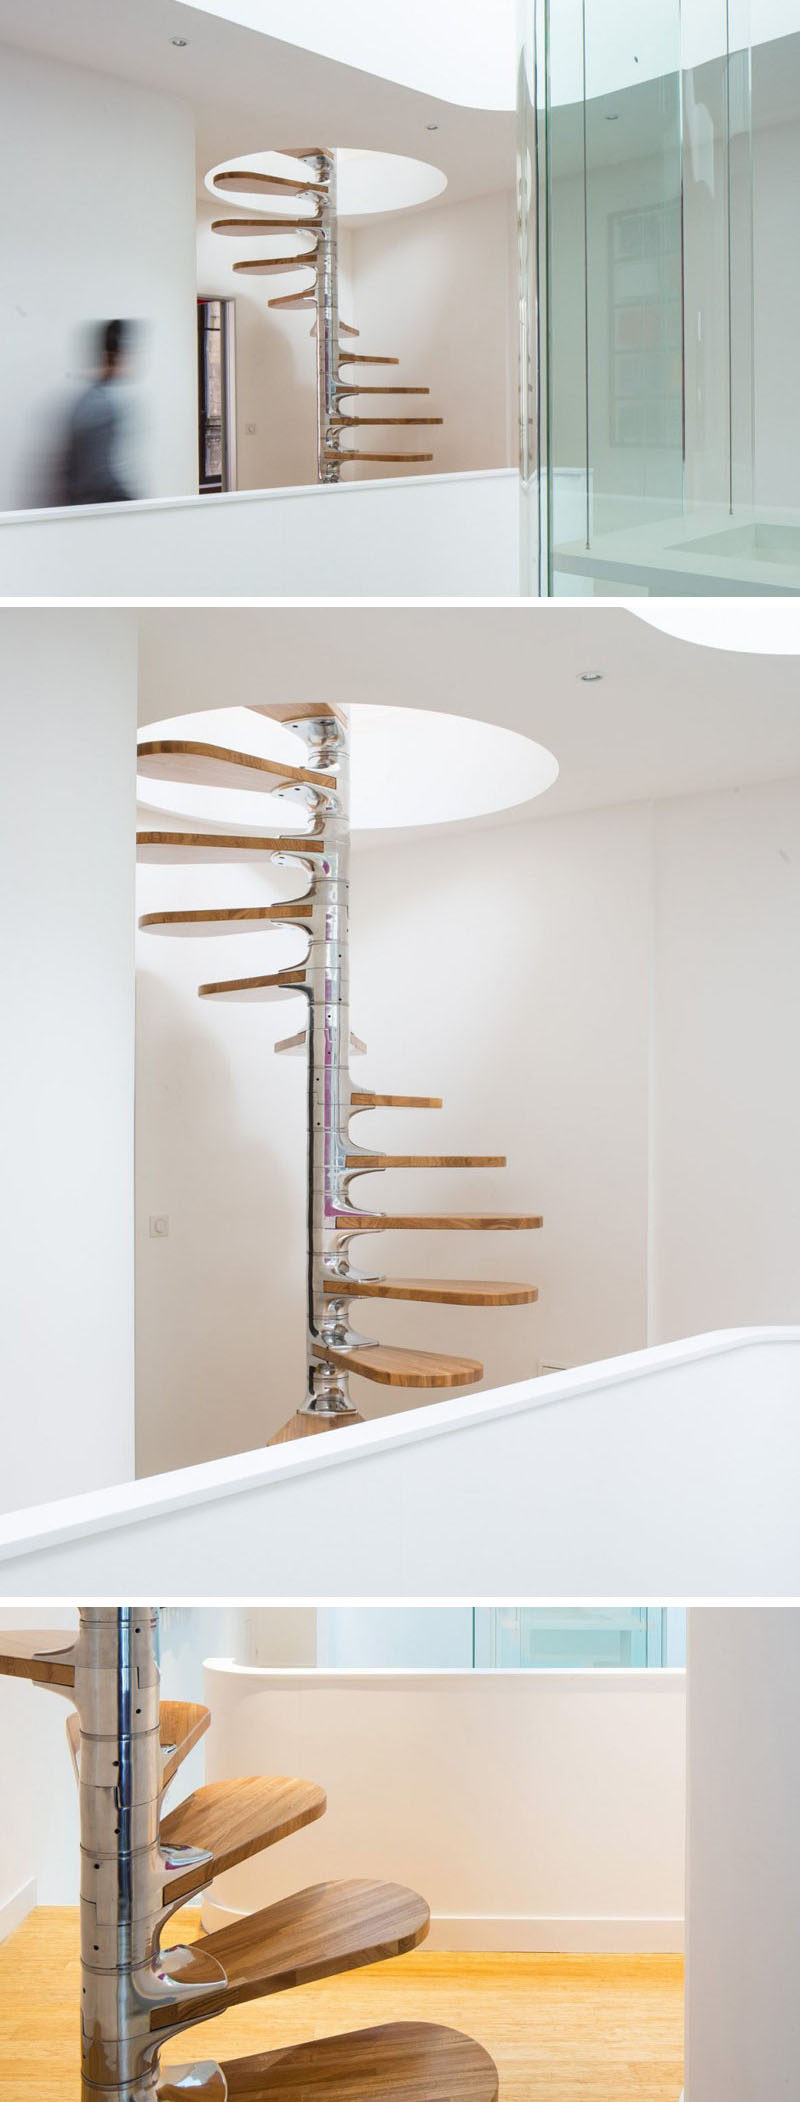 Эта небольшая современная винтовая лестница сделана из полированного металла с деревянными ступенями, обвивающими ее. Лестница ведет на верхний этаж через отверстие в потолке. # Спиральная лестница # Спиральная лестница # Современная спиральная лестница